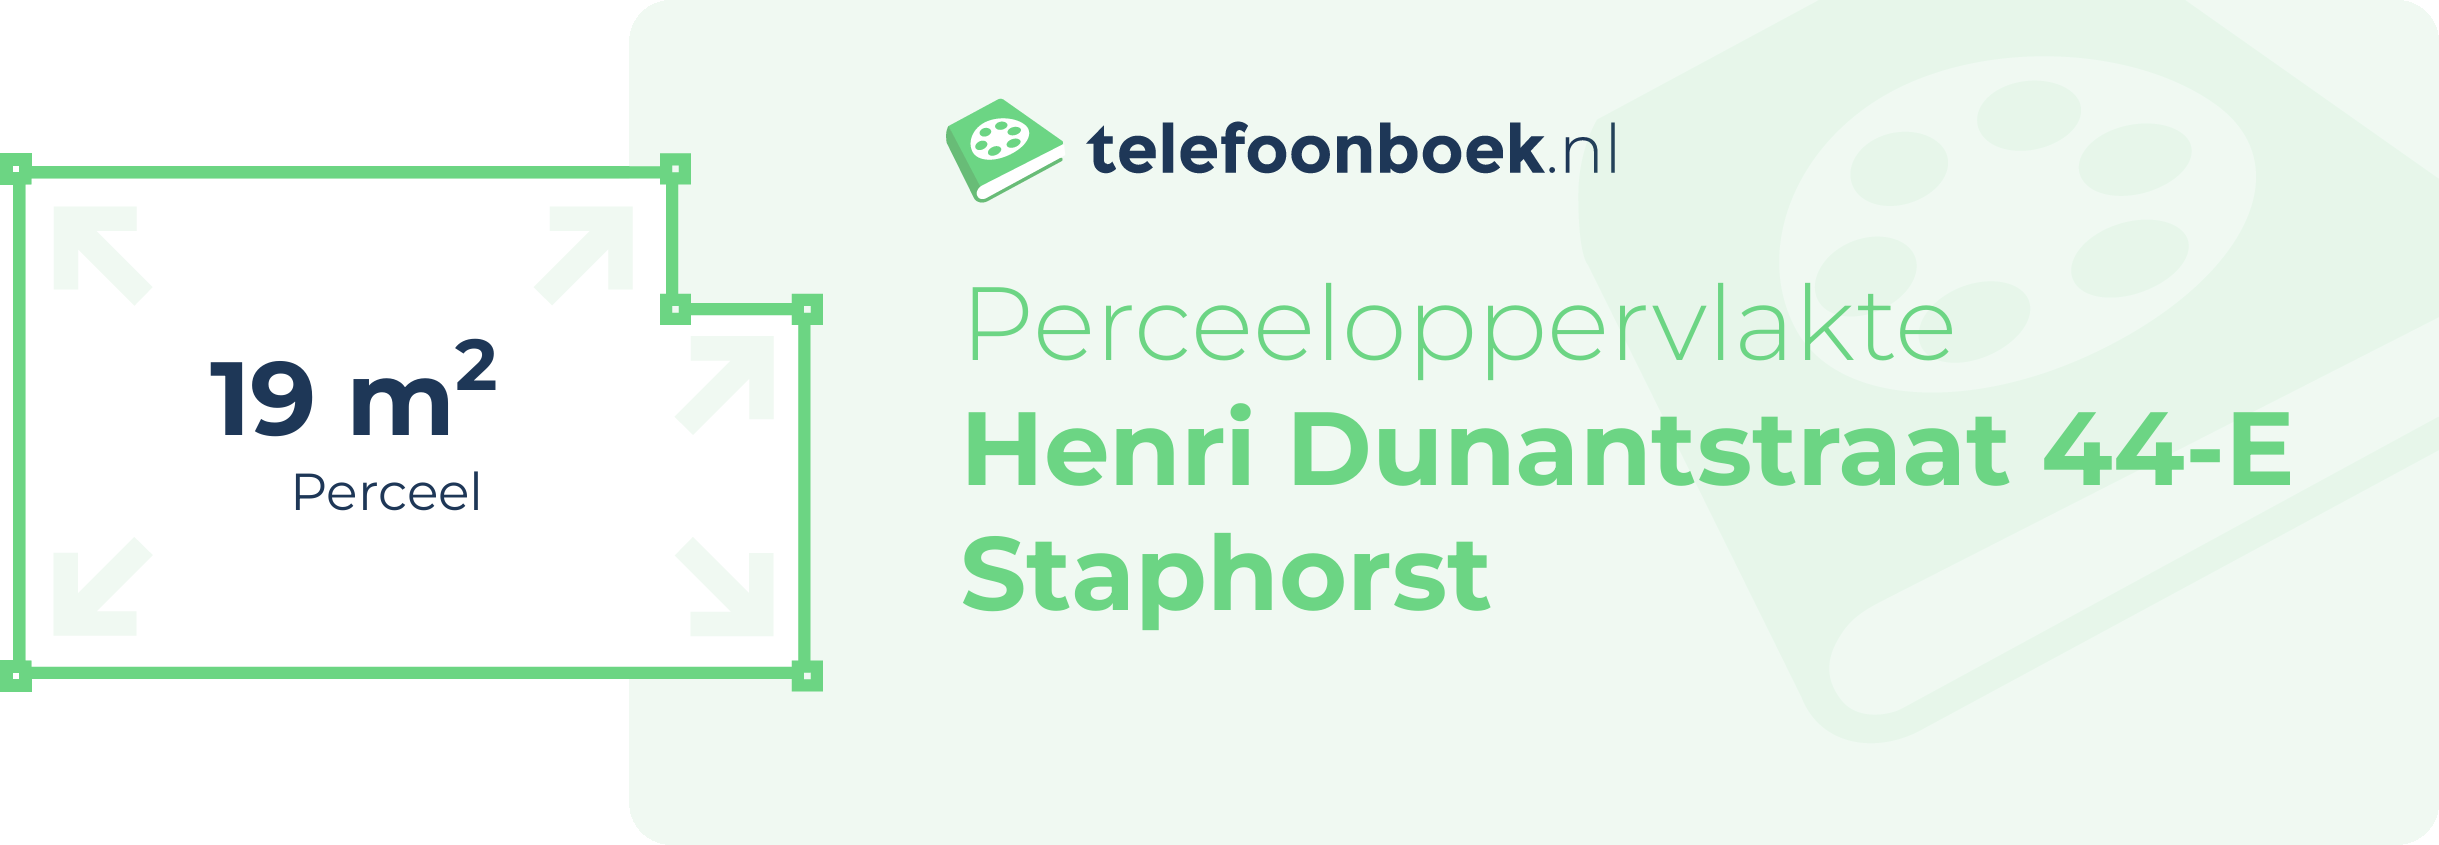 Perceeloppervlakte Henri Dunantstraat 44-E Staphorst